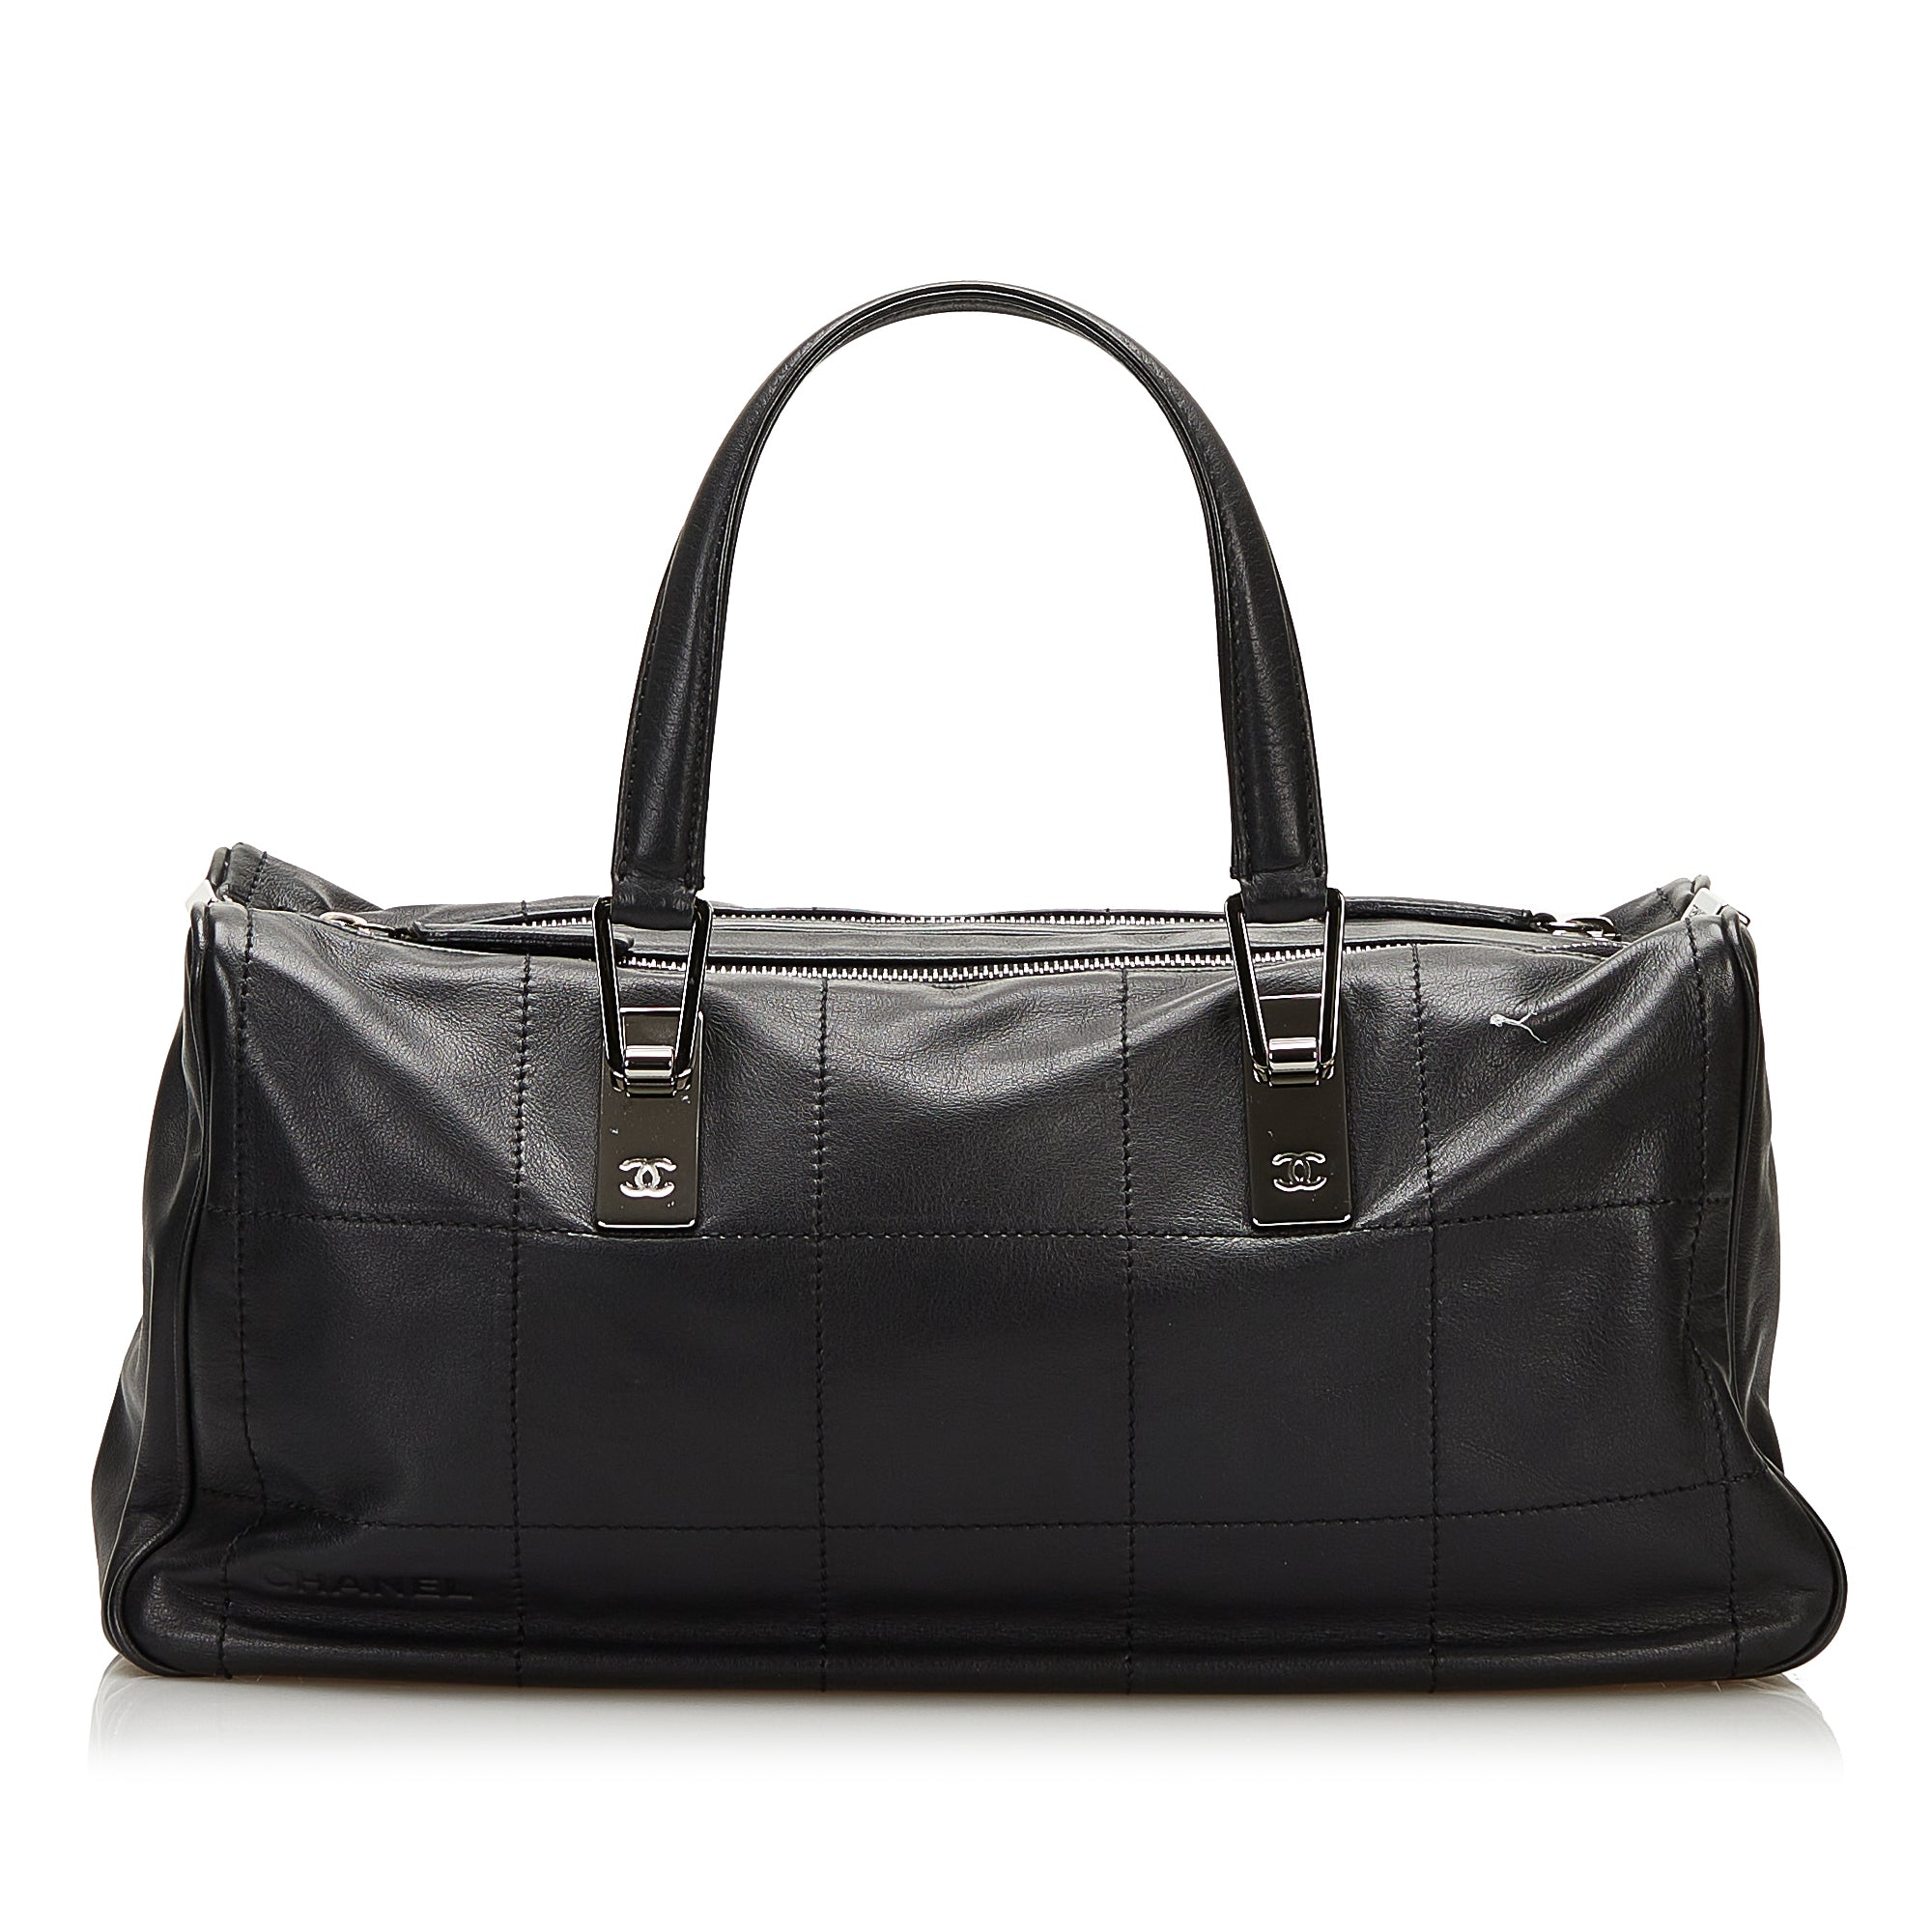 Black Chanel Chocolate Bar Leather Handbag Bag